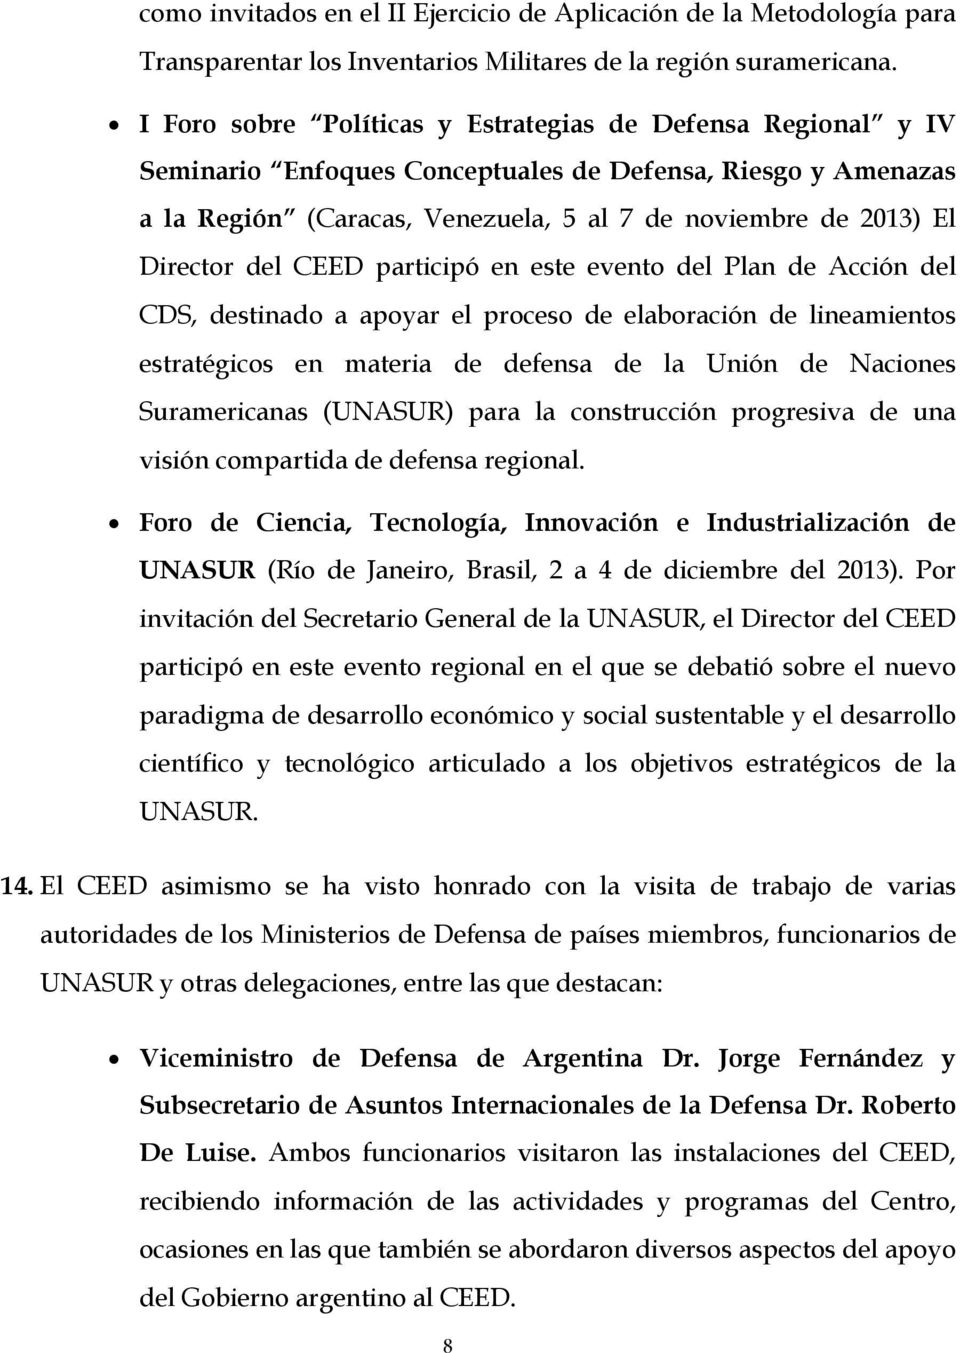 del CEED participó en este evento del Plan de Acción del CDS, destinado a apoyar el proceso de elaboración de lineamientos estratégicos en materia de defensa de la Unión de Naciones Suramericanas